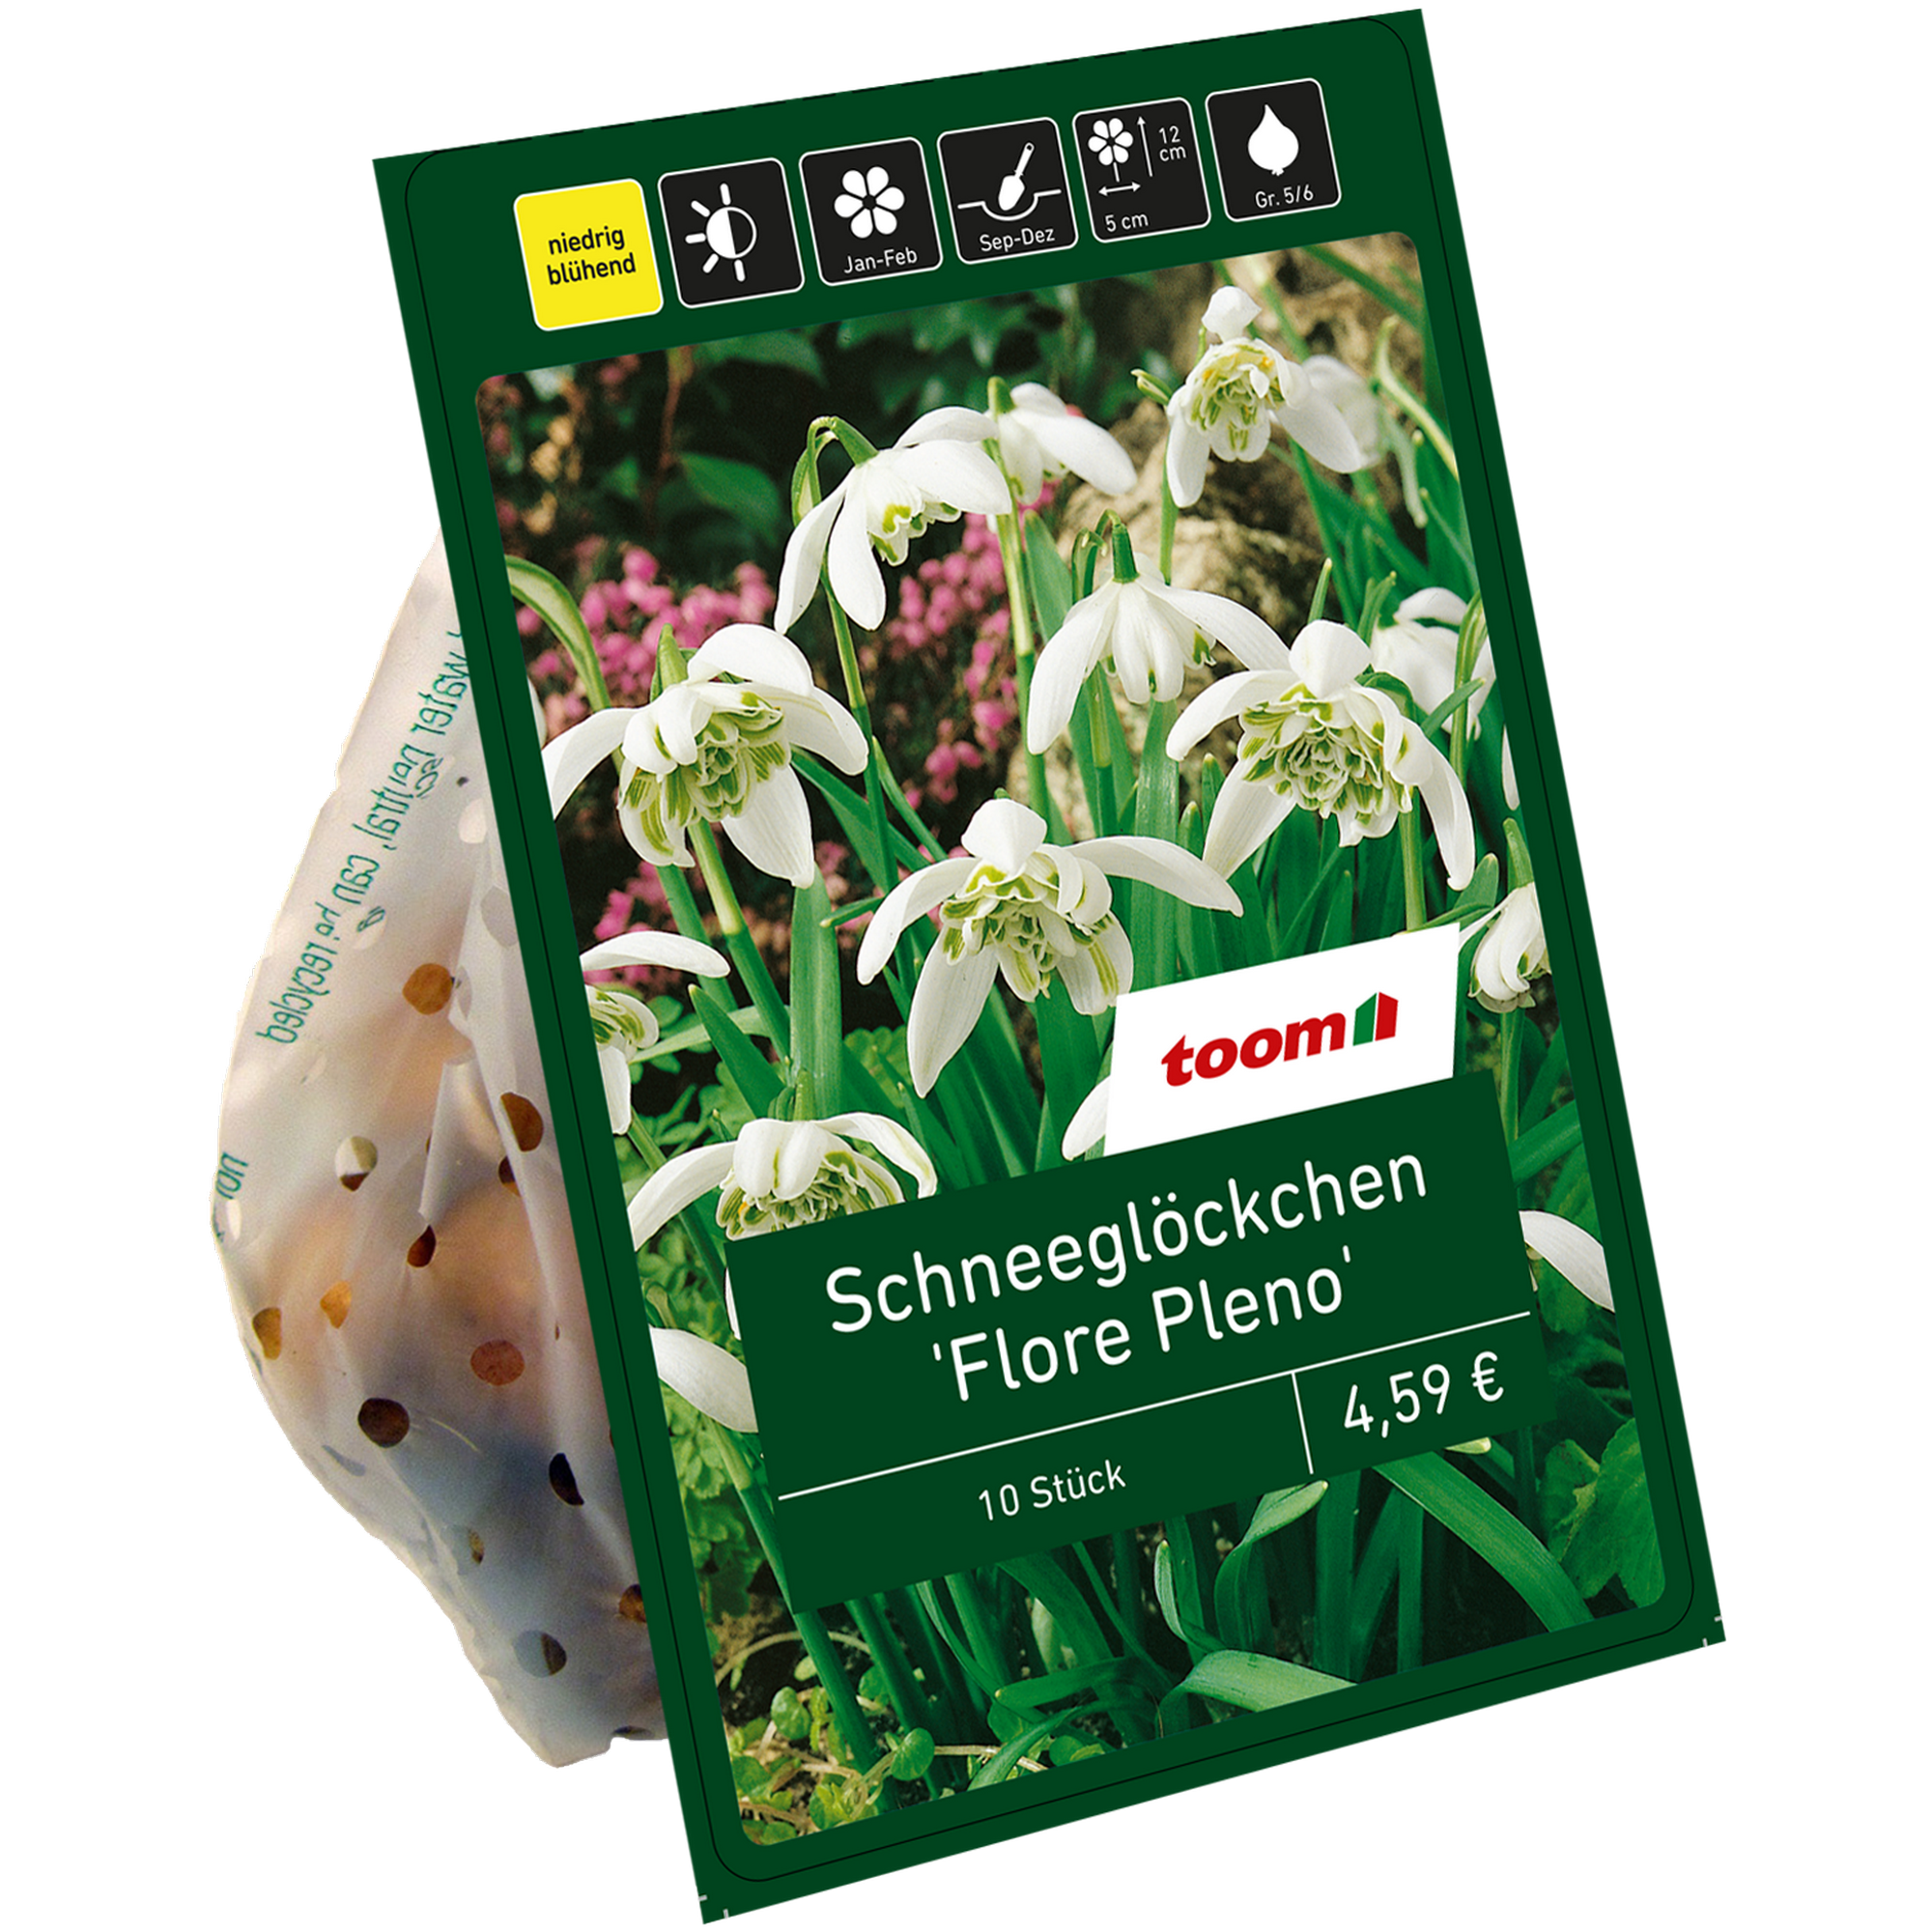 Schneeglöckchen 'Flore Pleno' weiß 10 Zwiebeln + product picture